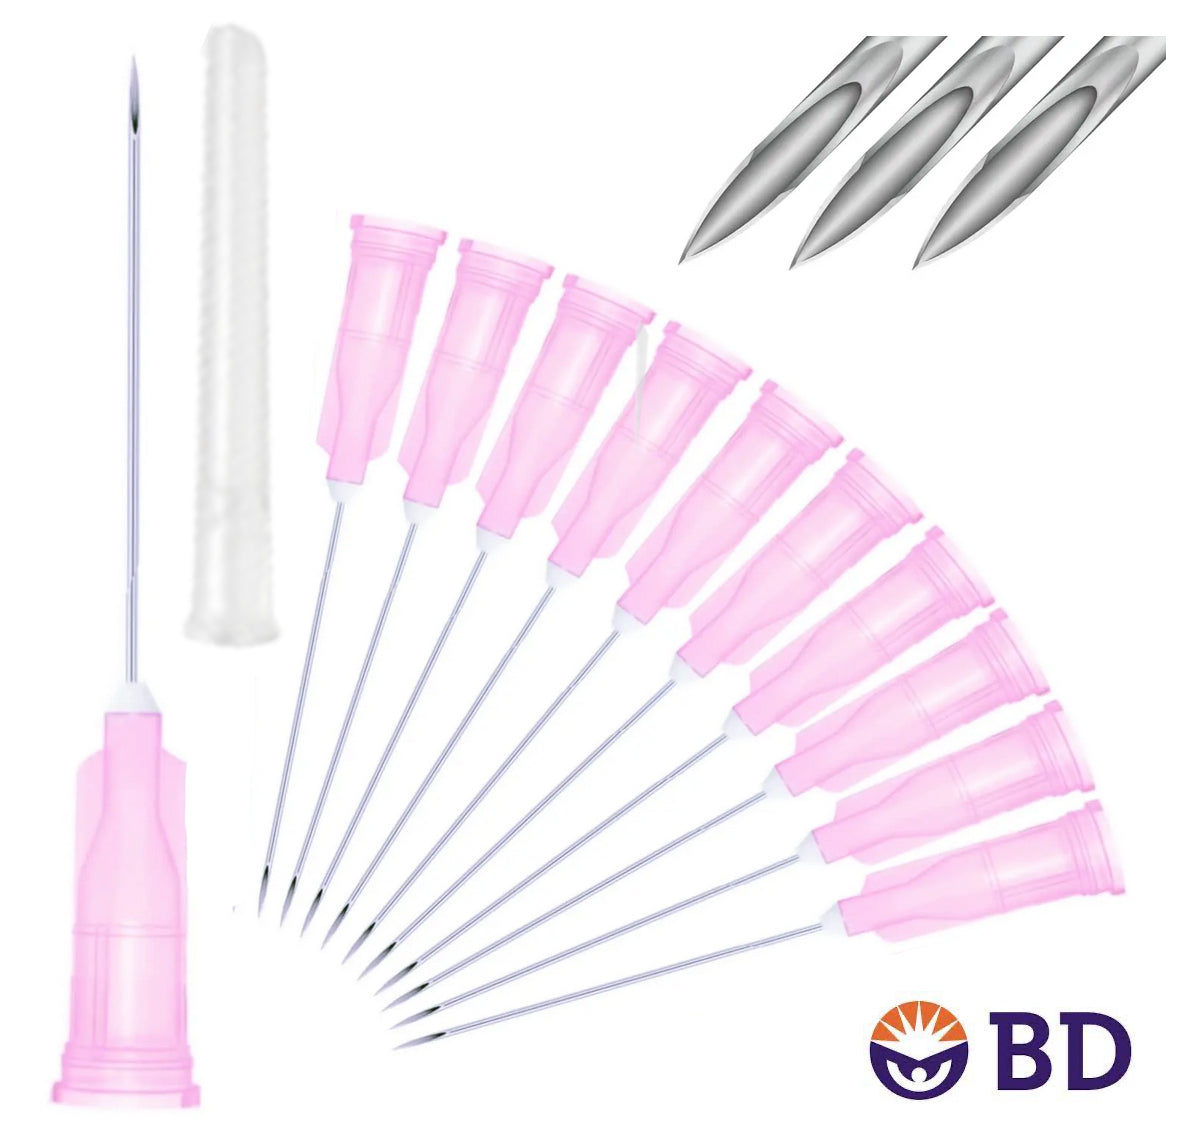 BD 18G x 1.5" Medical Needle (10pk)